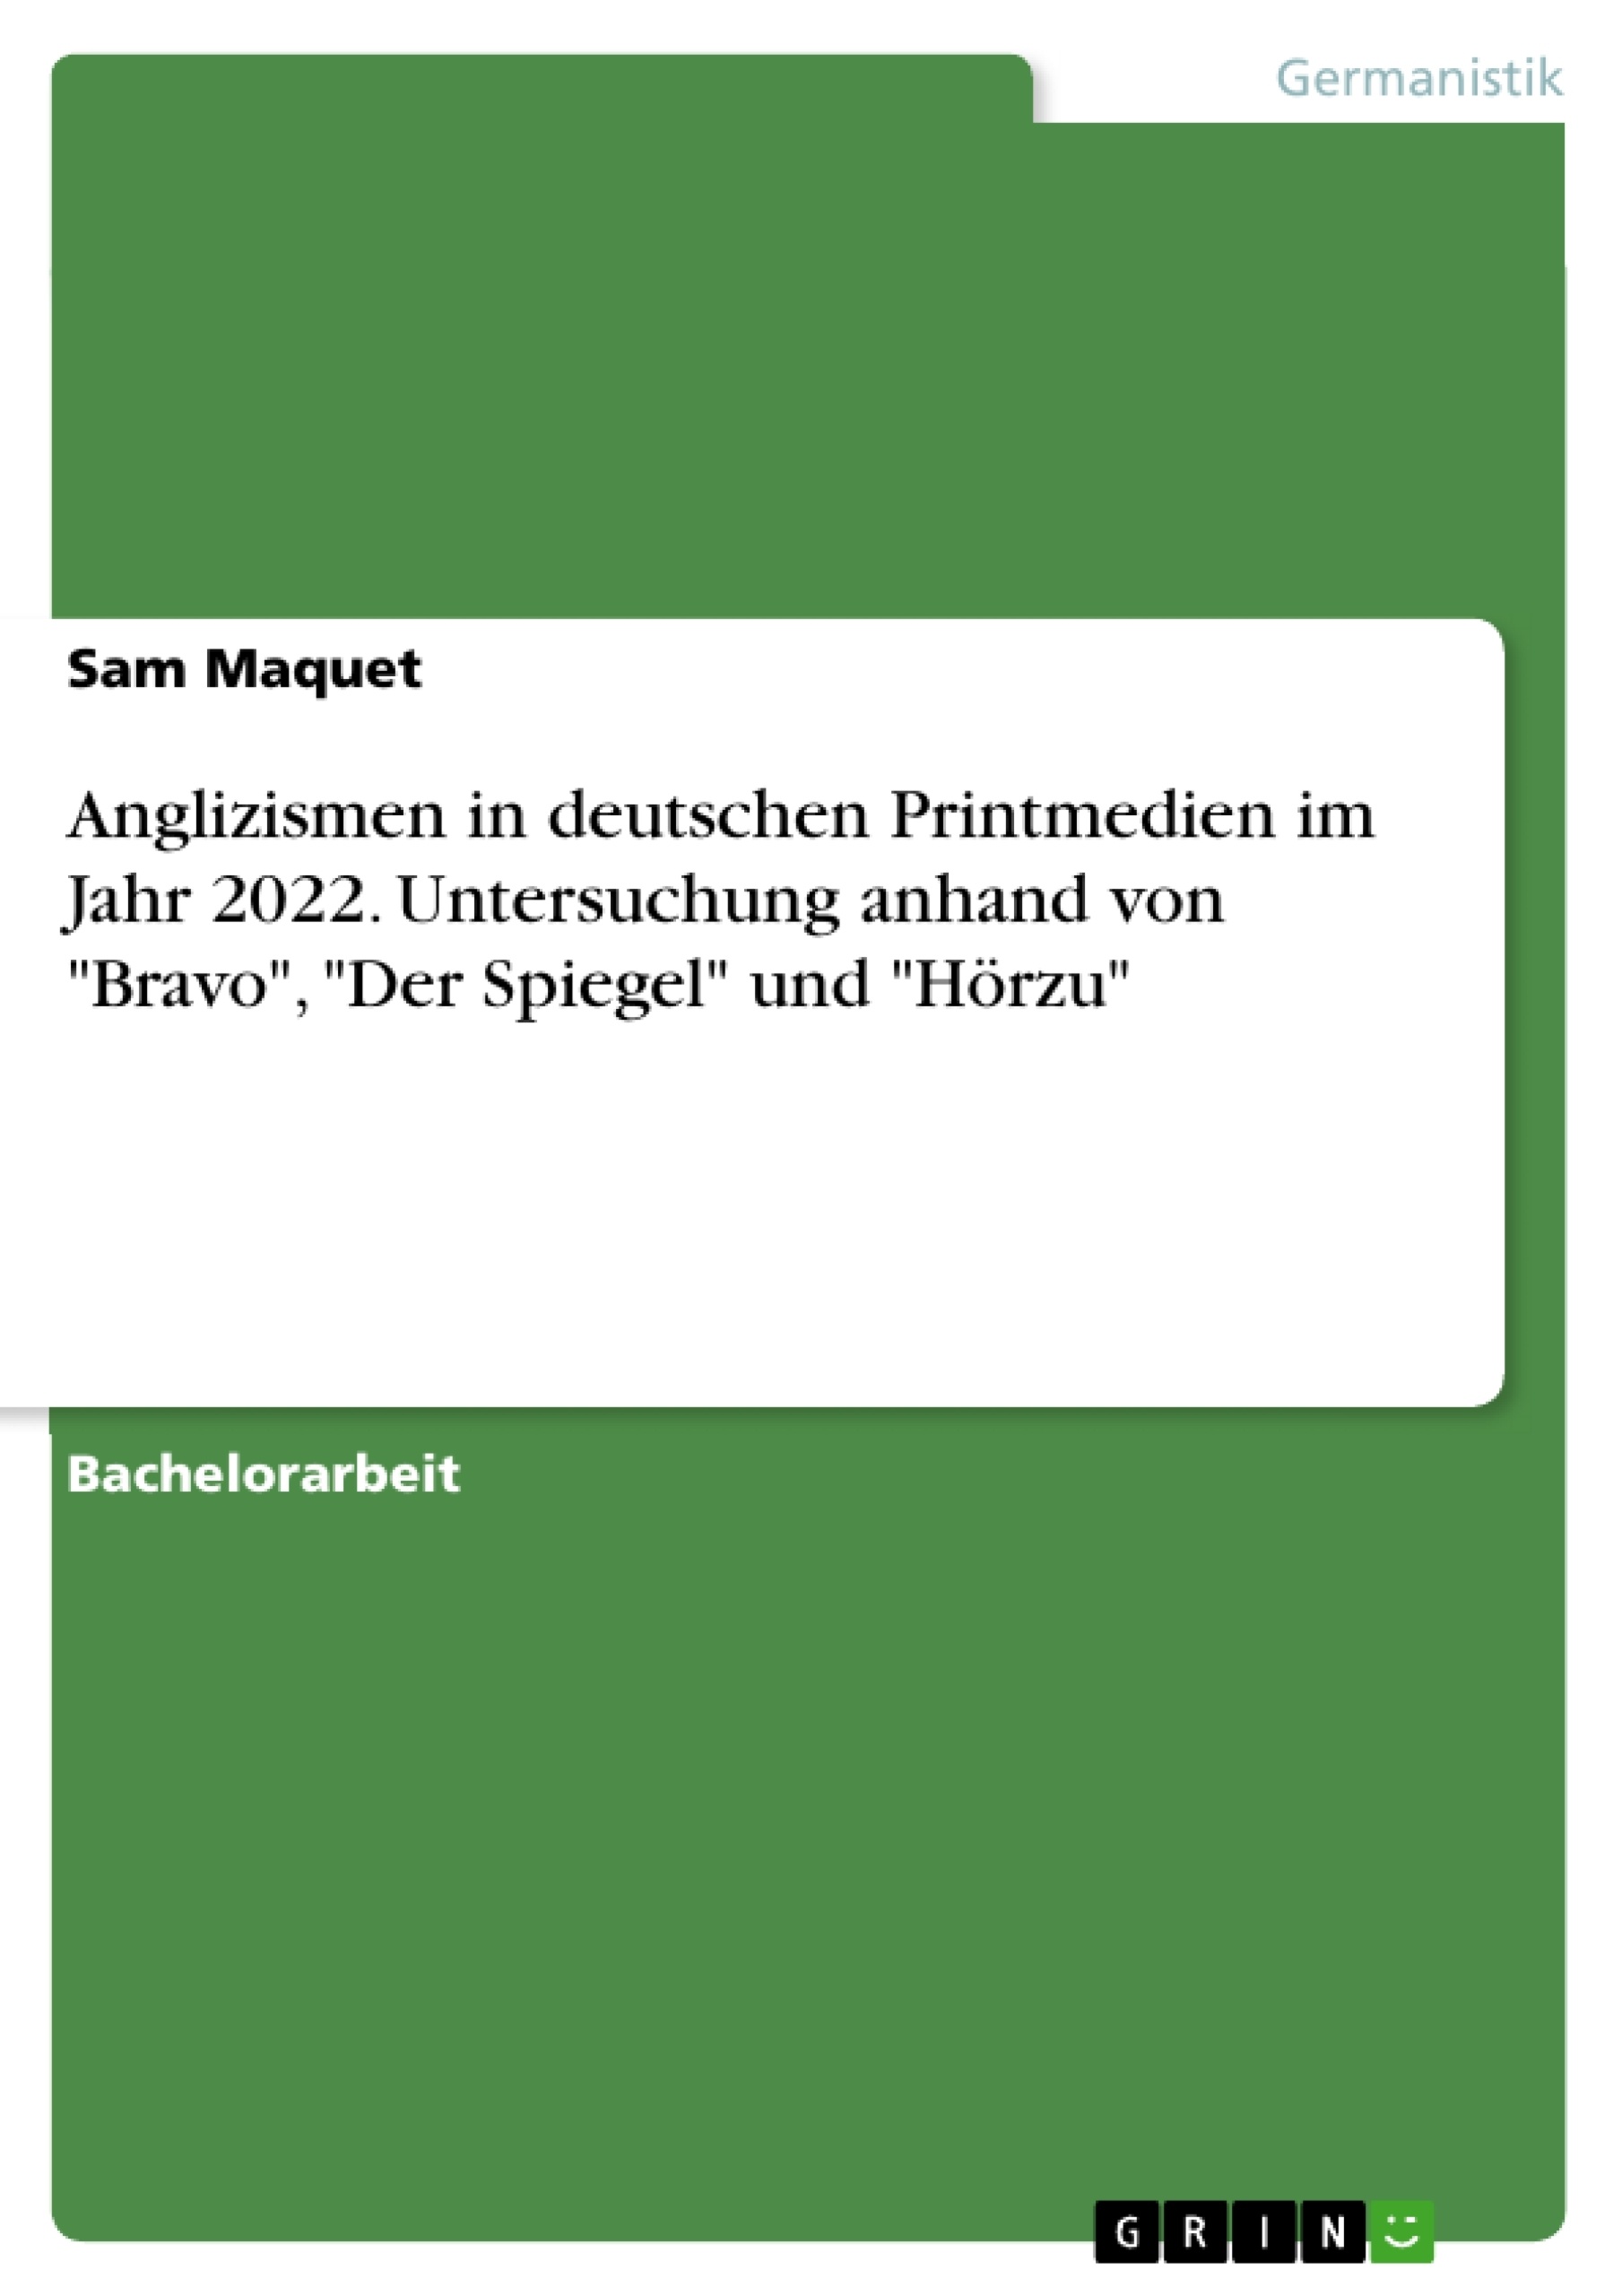 Title: Anglizismen in deutschen Printmedien im Jahr 2022. Untersuchung anhand von "Bravo", "Der Spiegel" und "Hörzu"